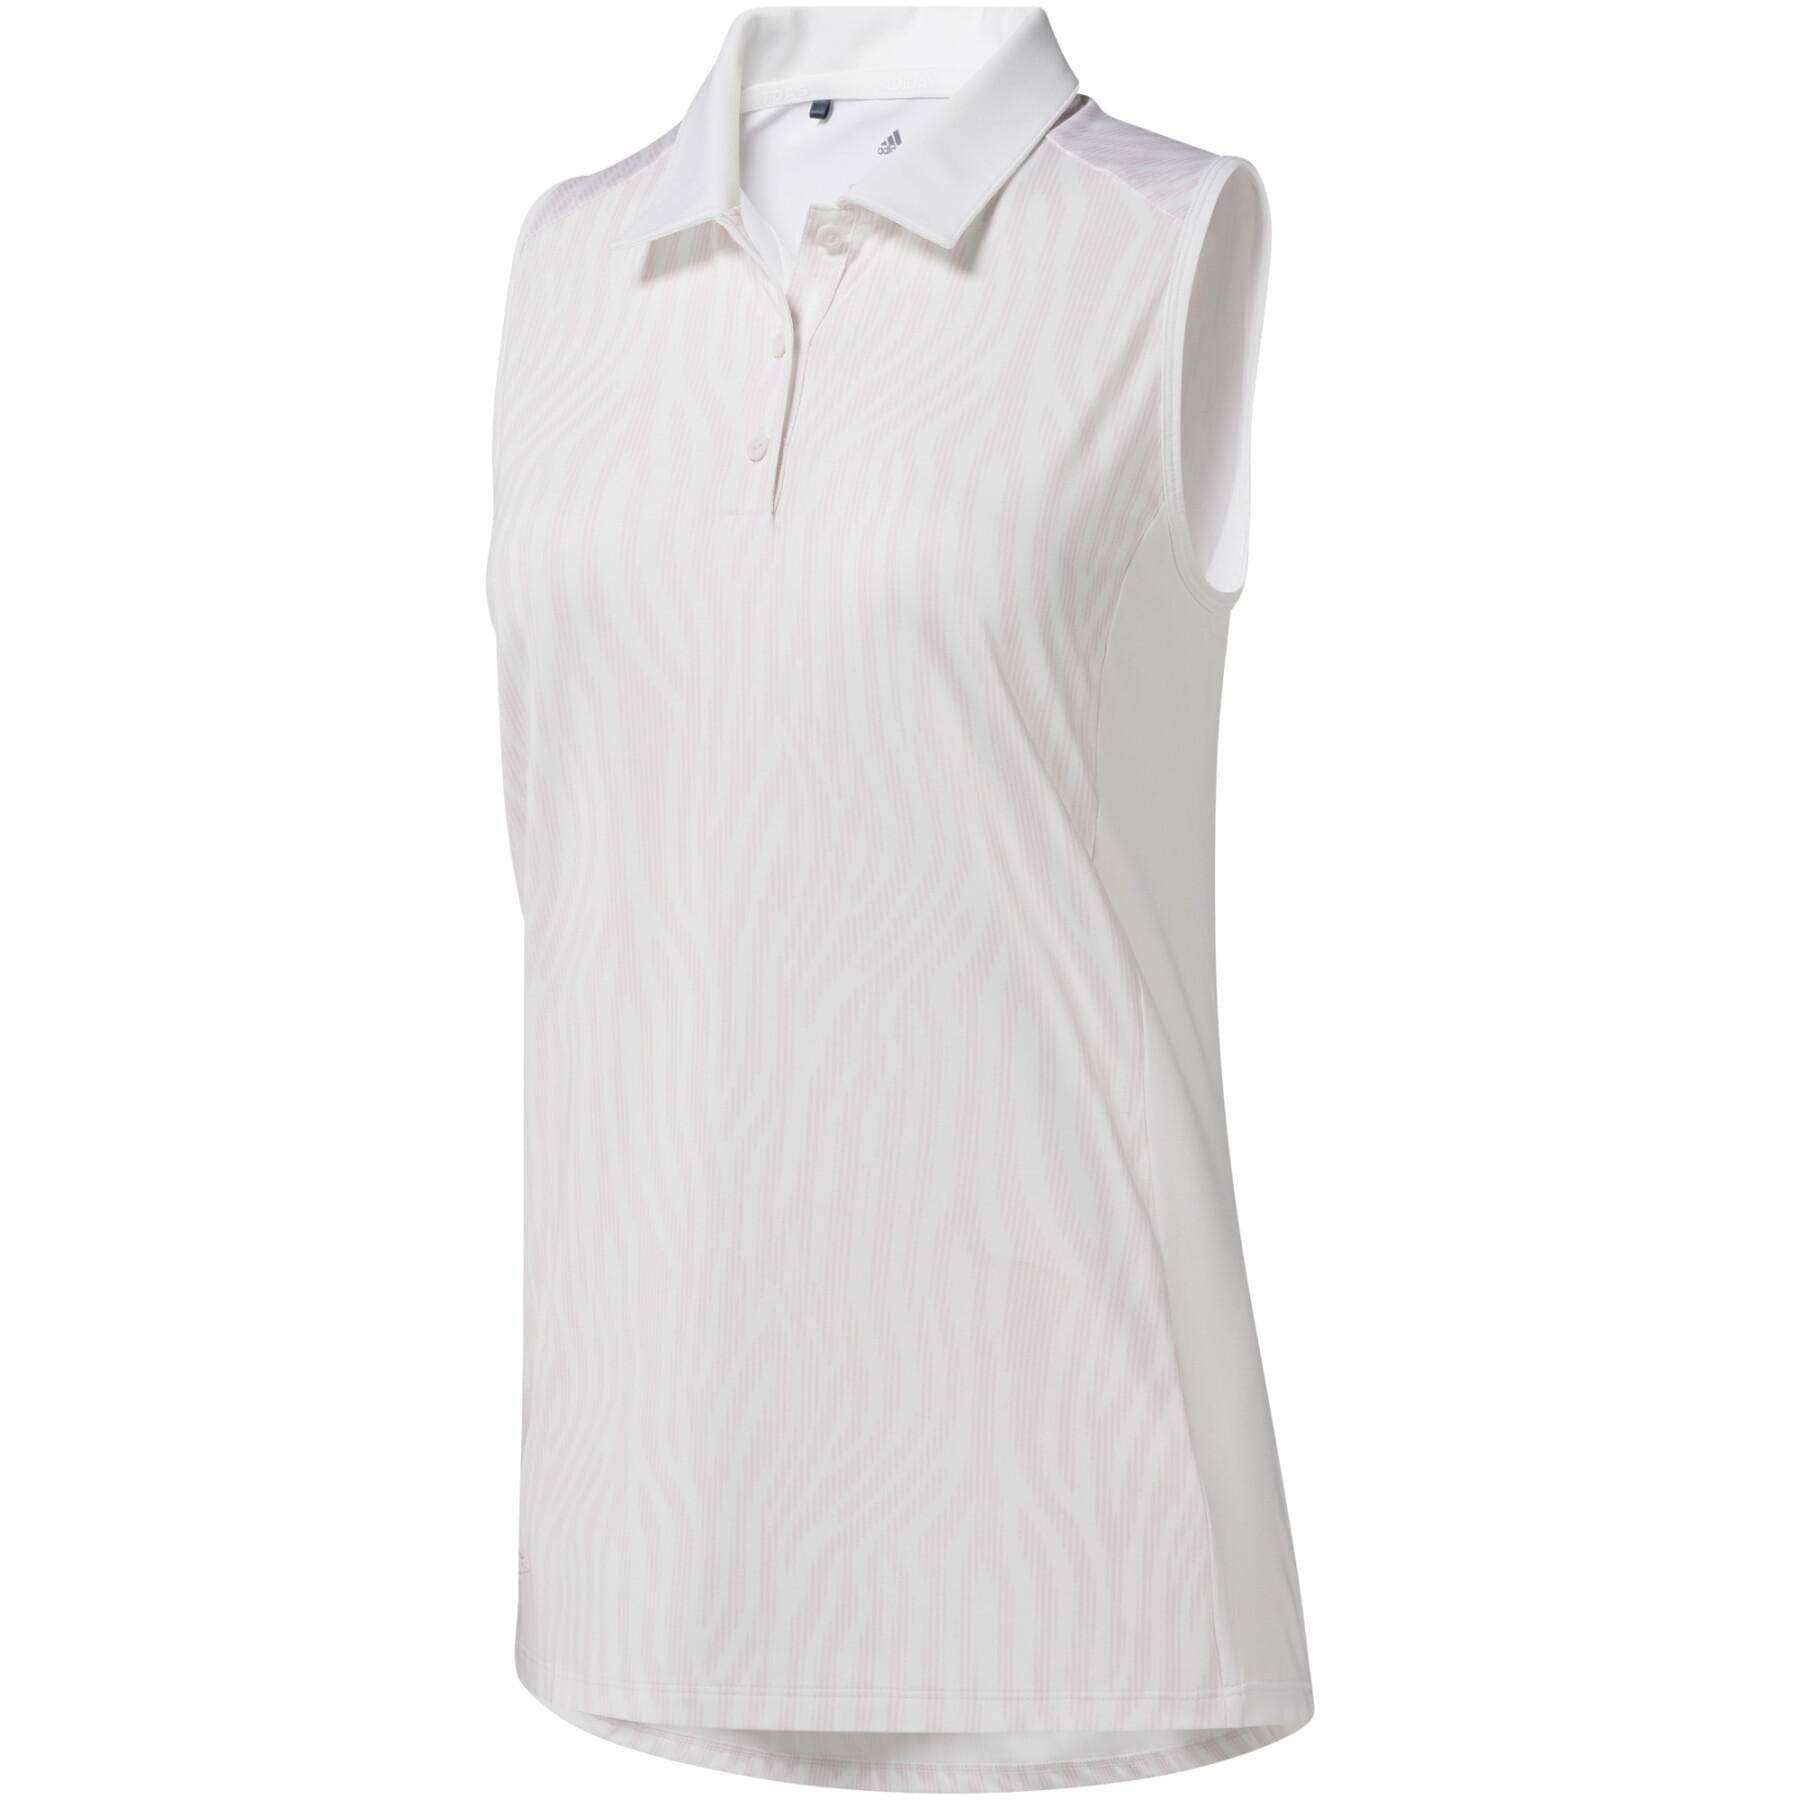 adidas Ultimate365 Golf Polo Shirt ADIDAS MUJER POLOS adidas